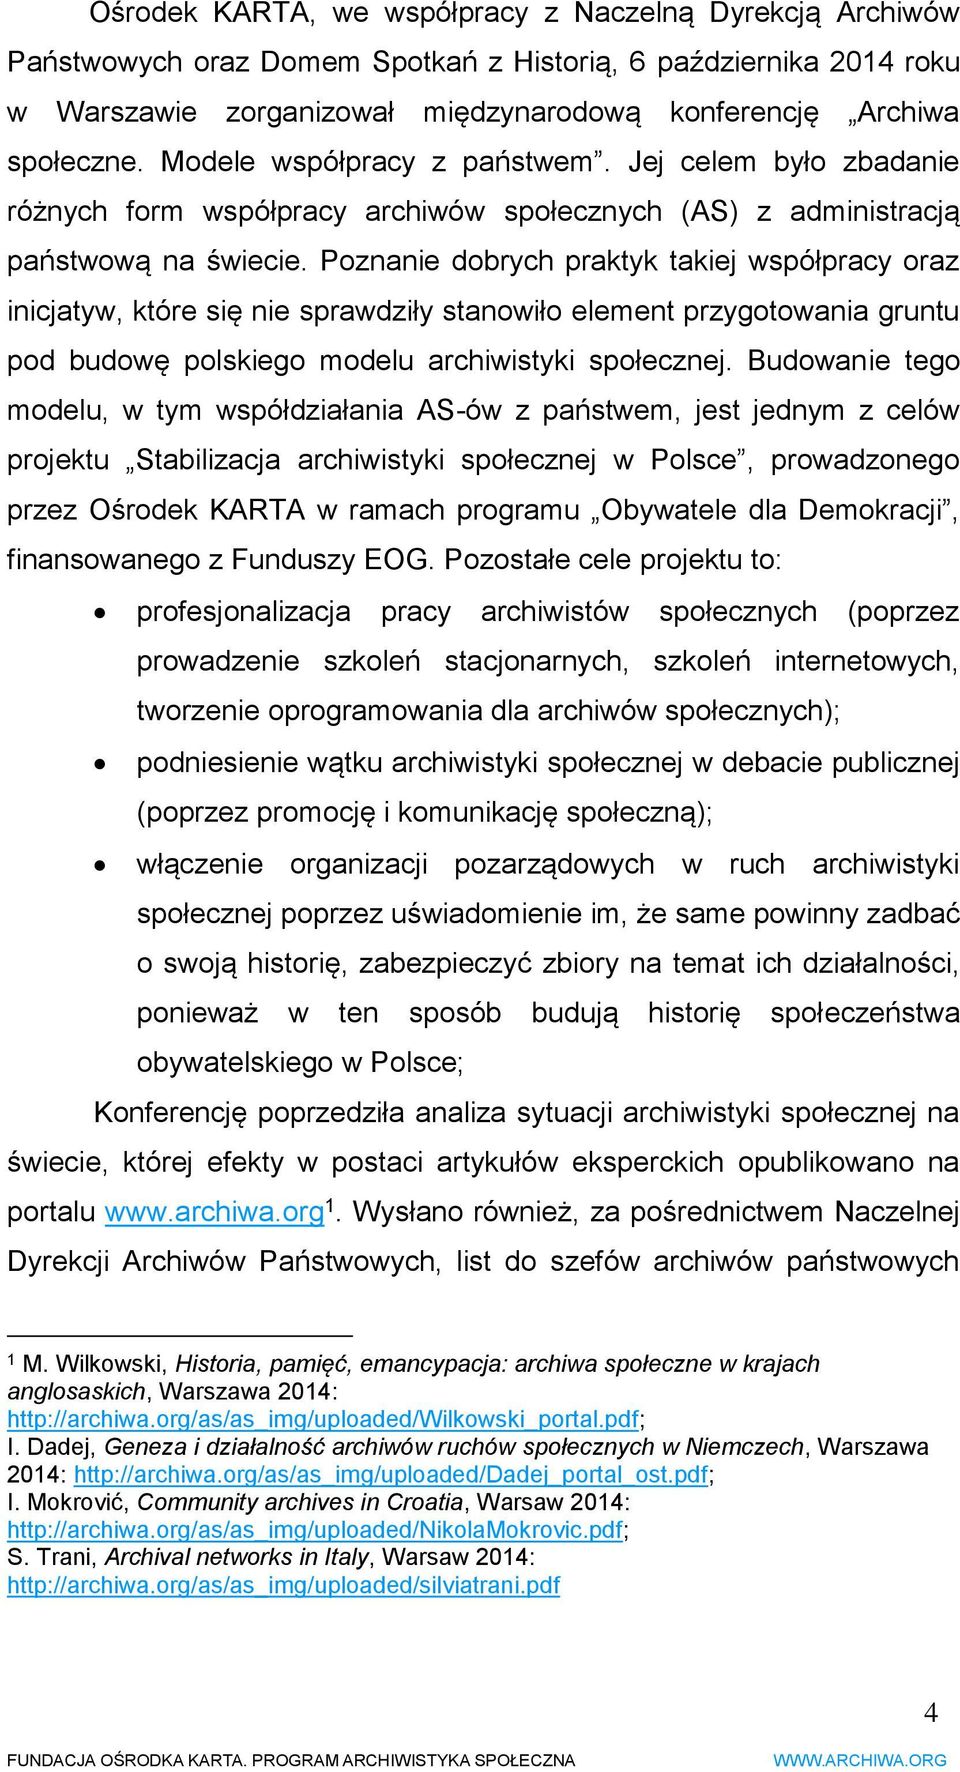 Poznanie dobrych praktyk takiej współpracy oraz inicjatyw, które się nie sprawdziły stanowiło element przygotowania gruntu pod budowę polskiego modelu archiwistyki społecznej.